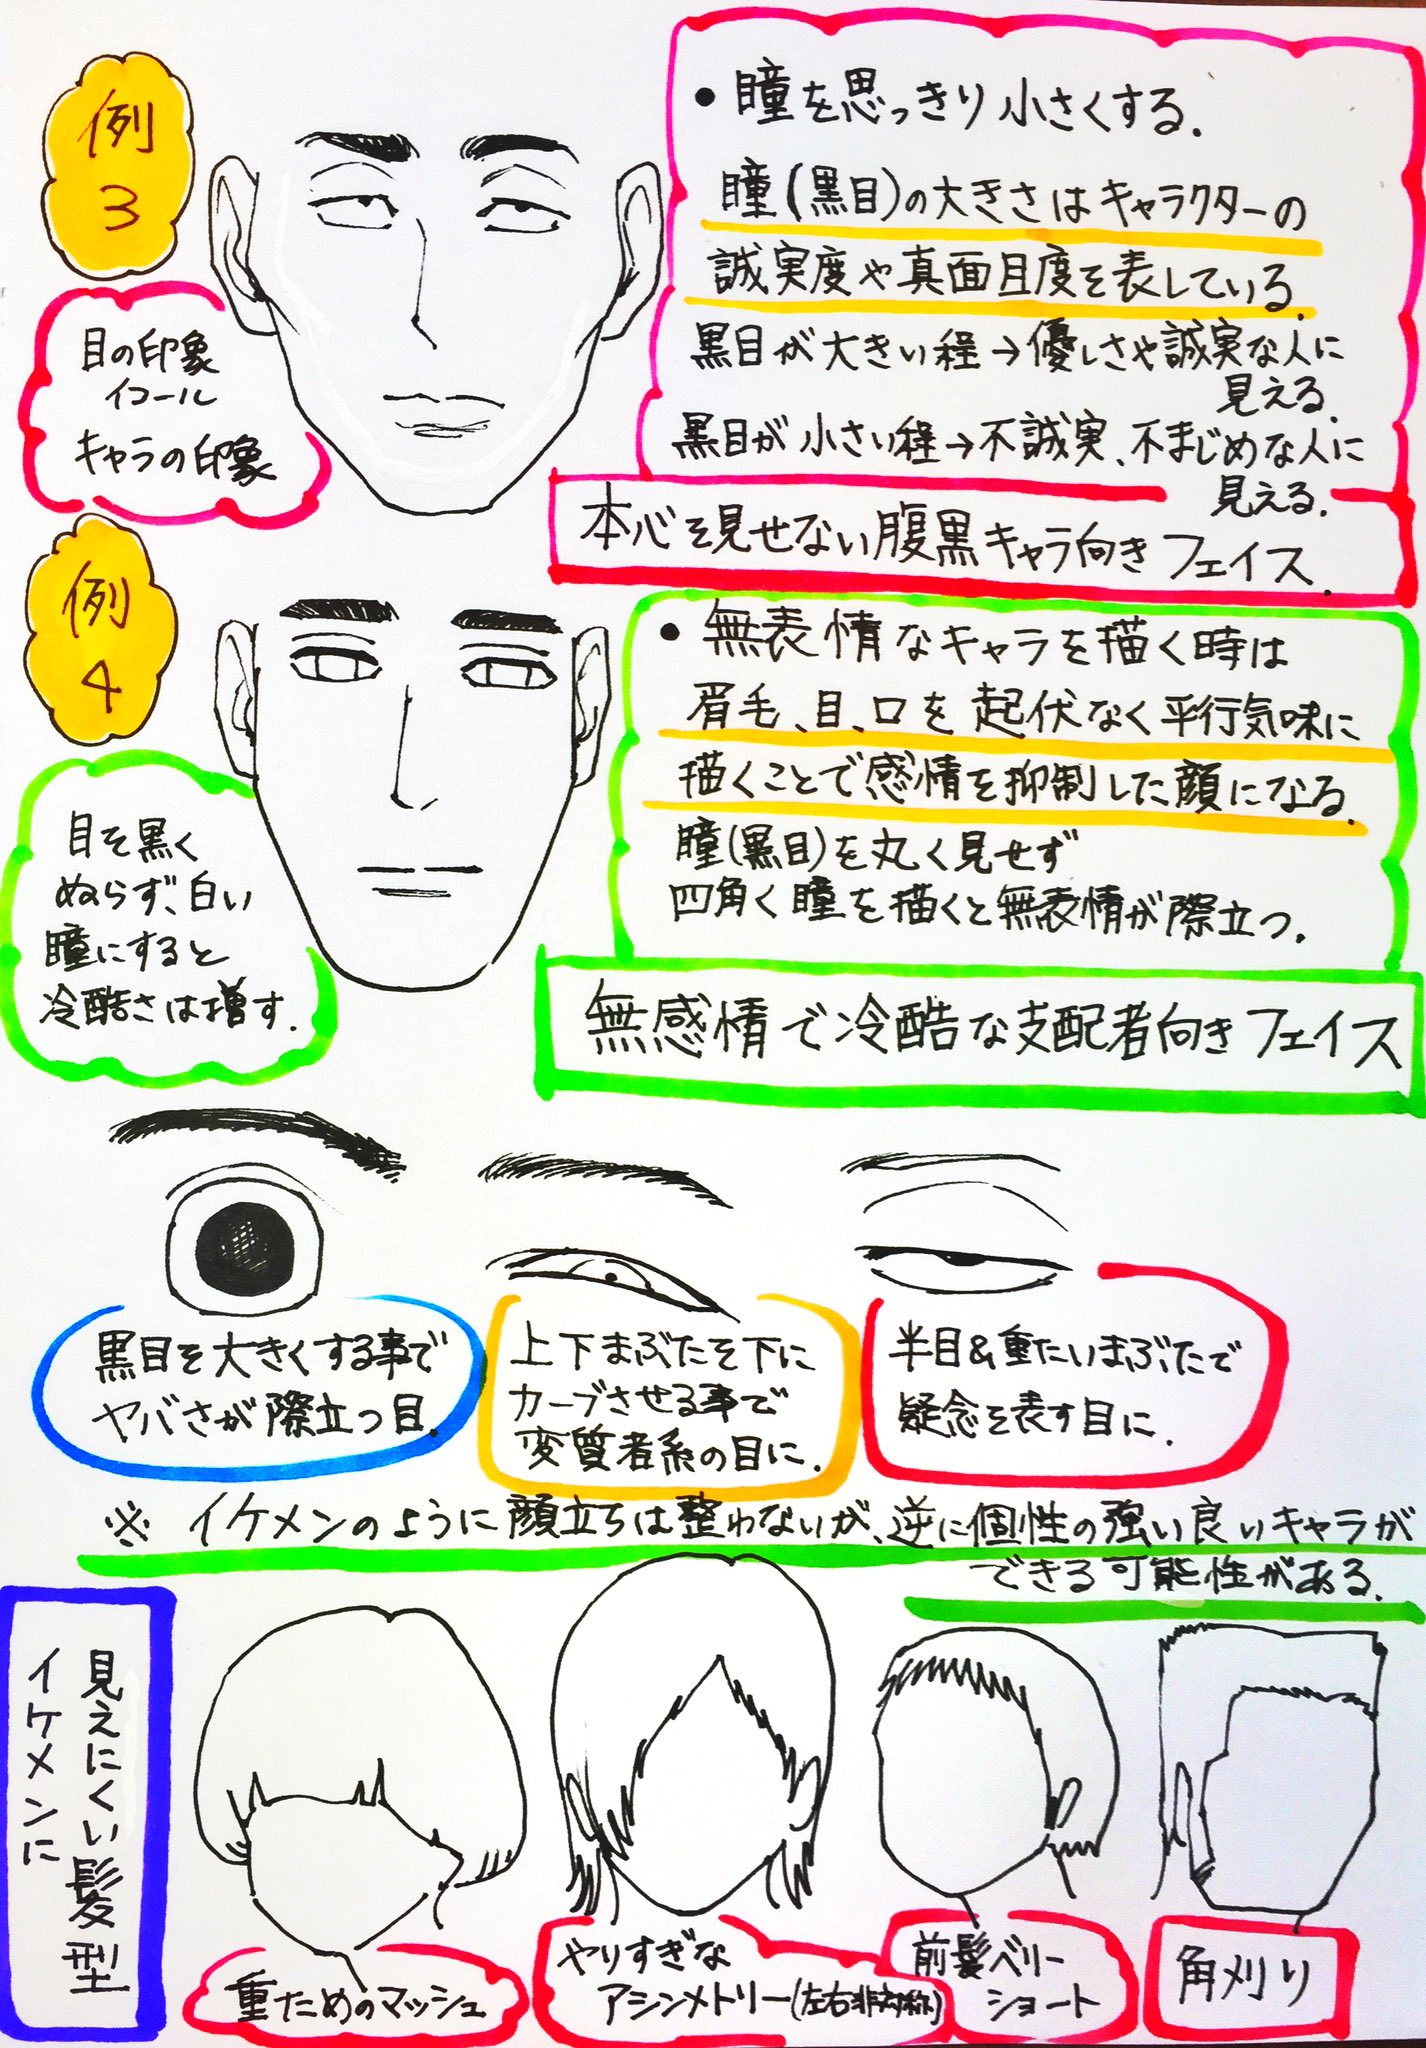 吉村拓也 イラスト講座 顔の描き方 非イケメンキャラ バージョン アップしました 前回の イケメンの描き方 とセットで見ると面白いかもです T Co 81u14shqdr Twitter